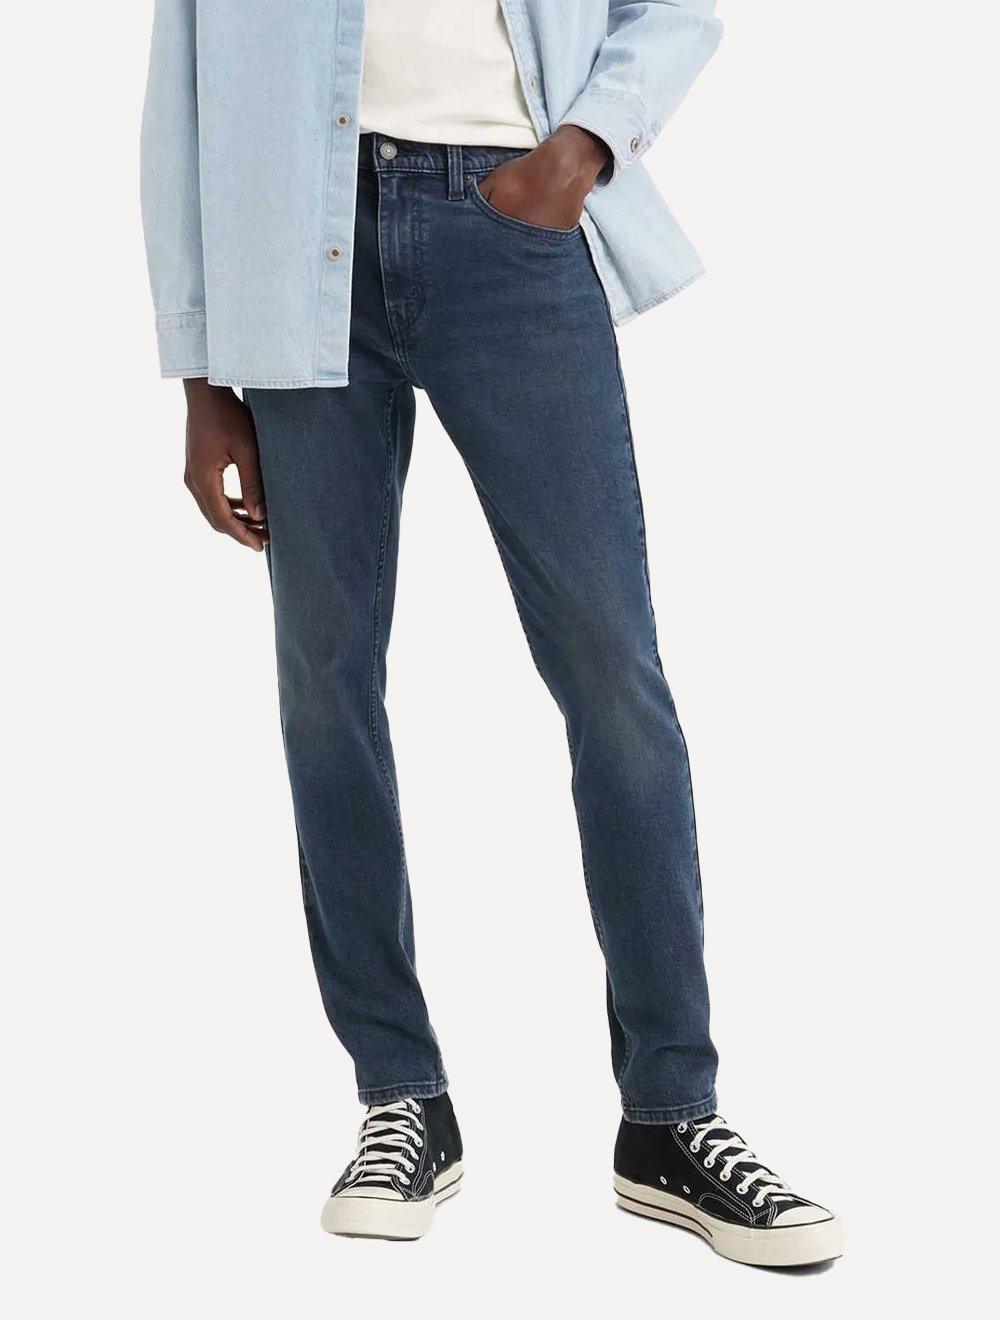 Calça Levis Jeans Masculina 512 Slim Taper Stretch Stone Azul Escuro